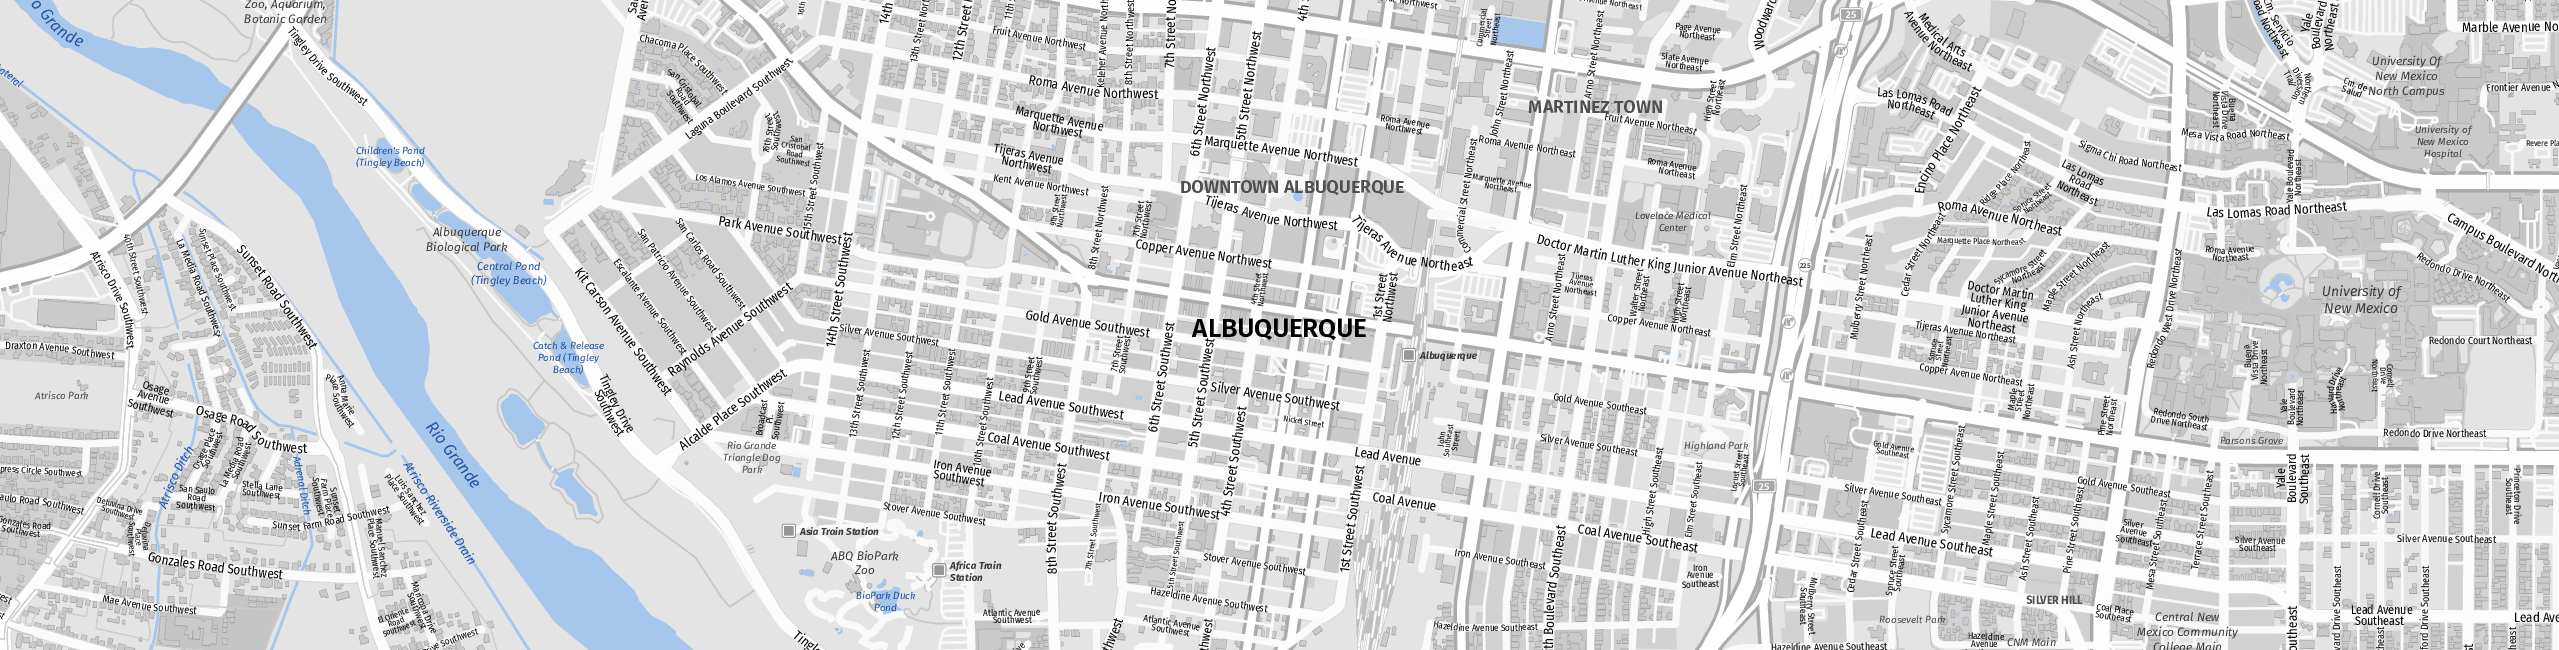 Stadtplan Albuquerque zum Downloaden.